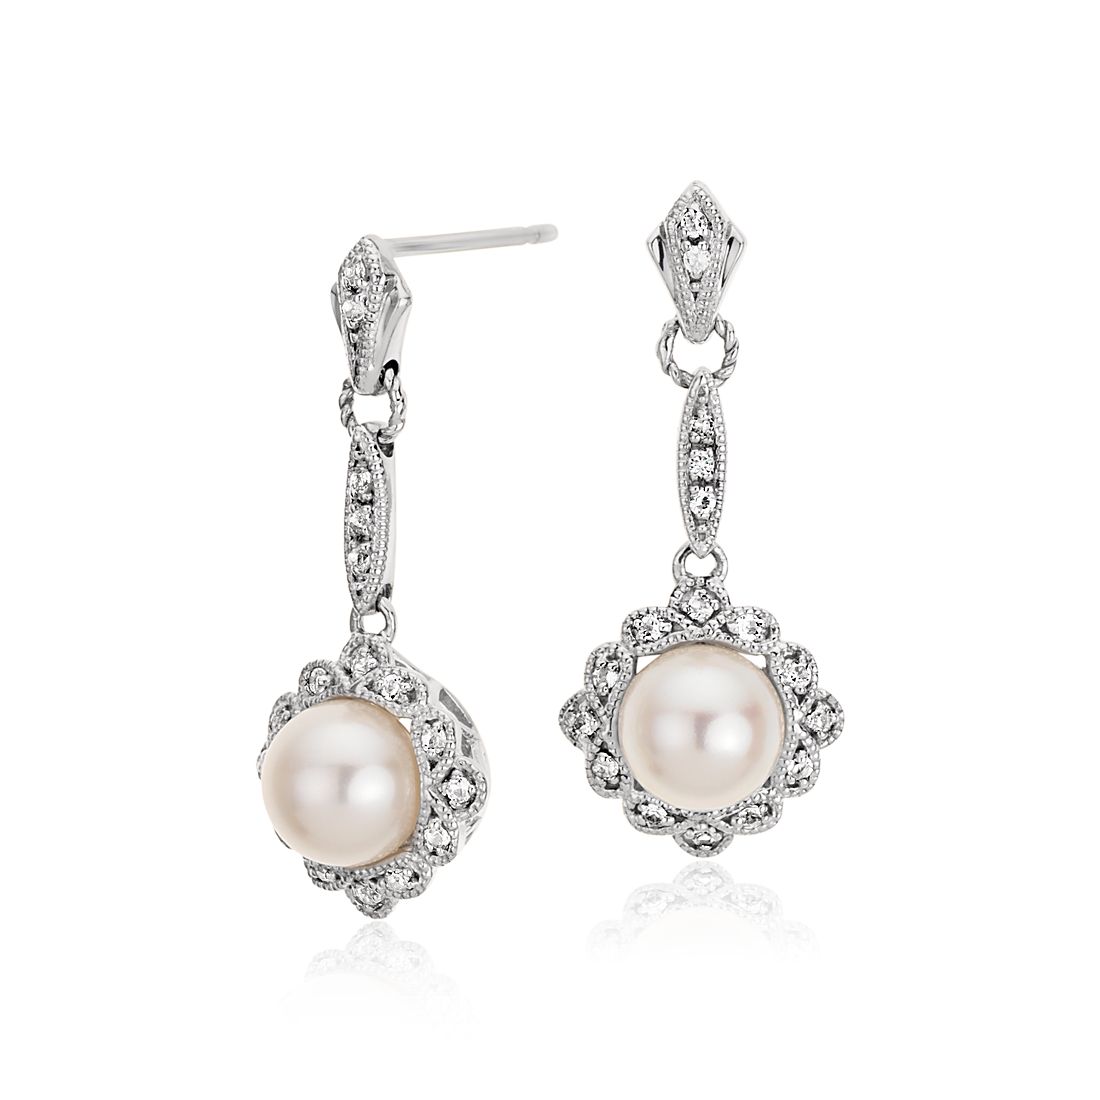 Vintage-Inspired Freshwater Cultured Pearl Drop Earrings in Sterling